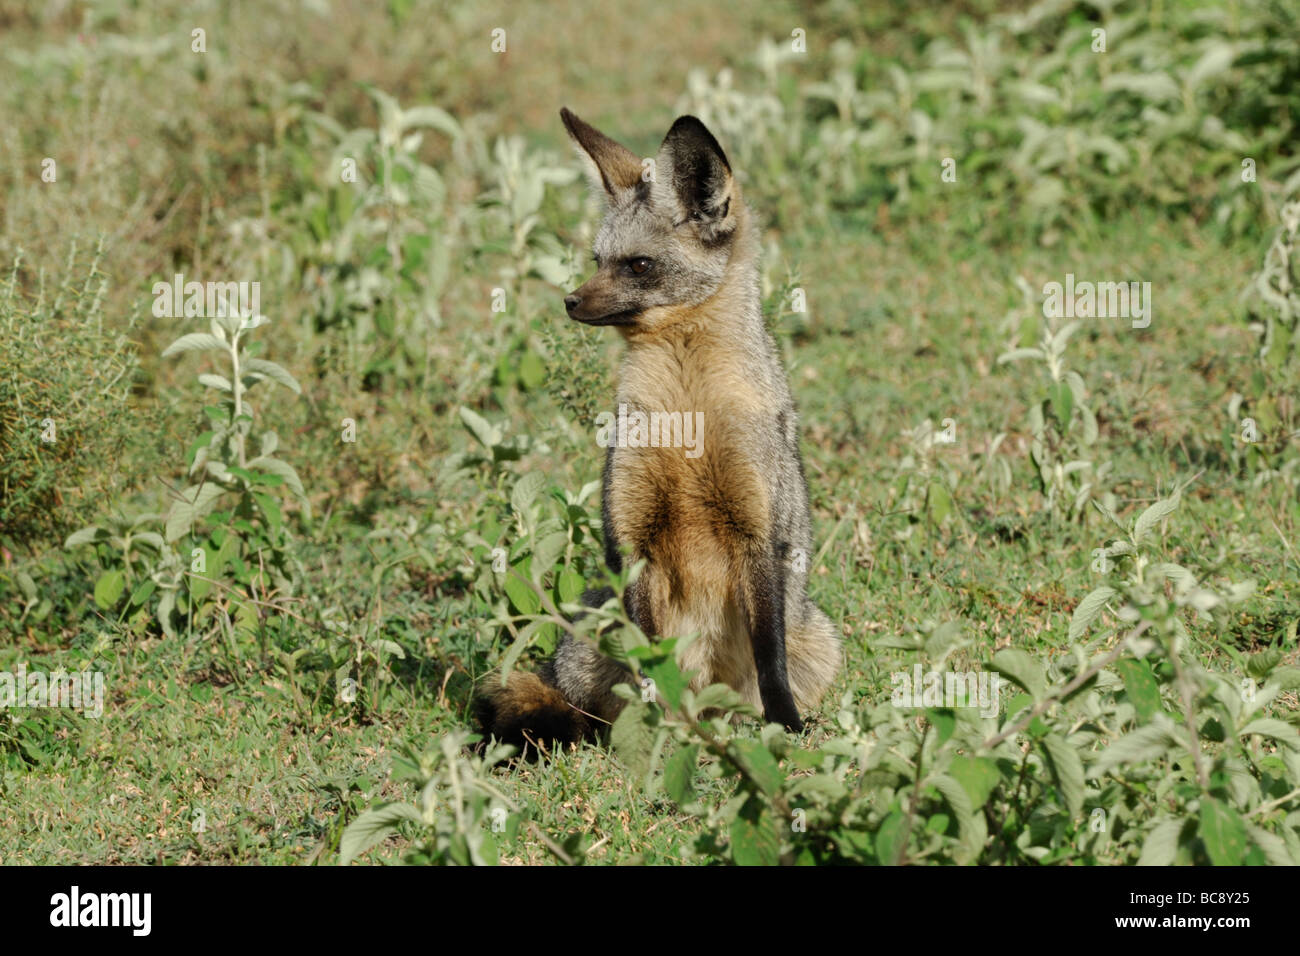 Foto di stock di un bat-eared Fox seduto e guardare, Ndutu, Ngorongoro Conservation Area, Tanzania, febbraio 2009. Foto Stock